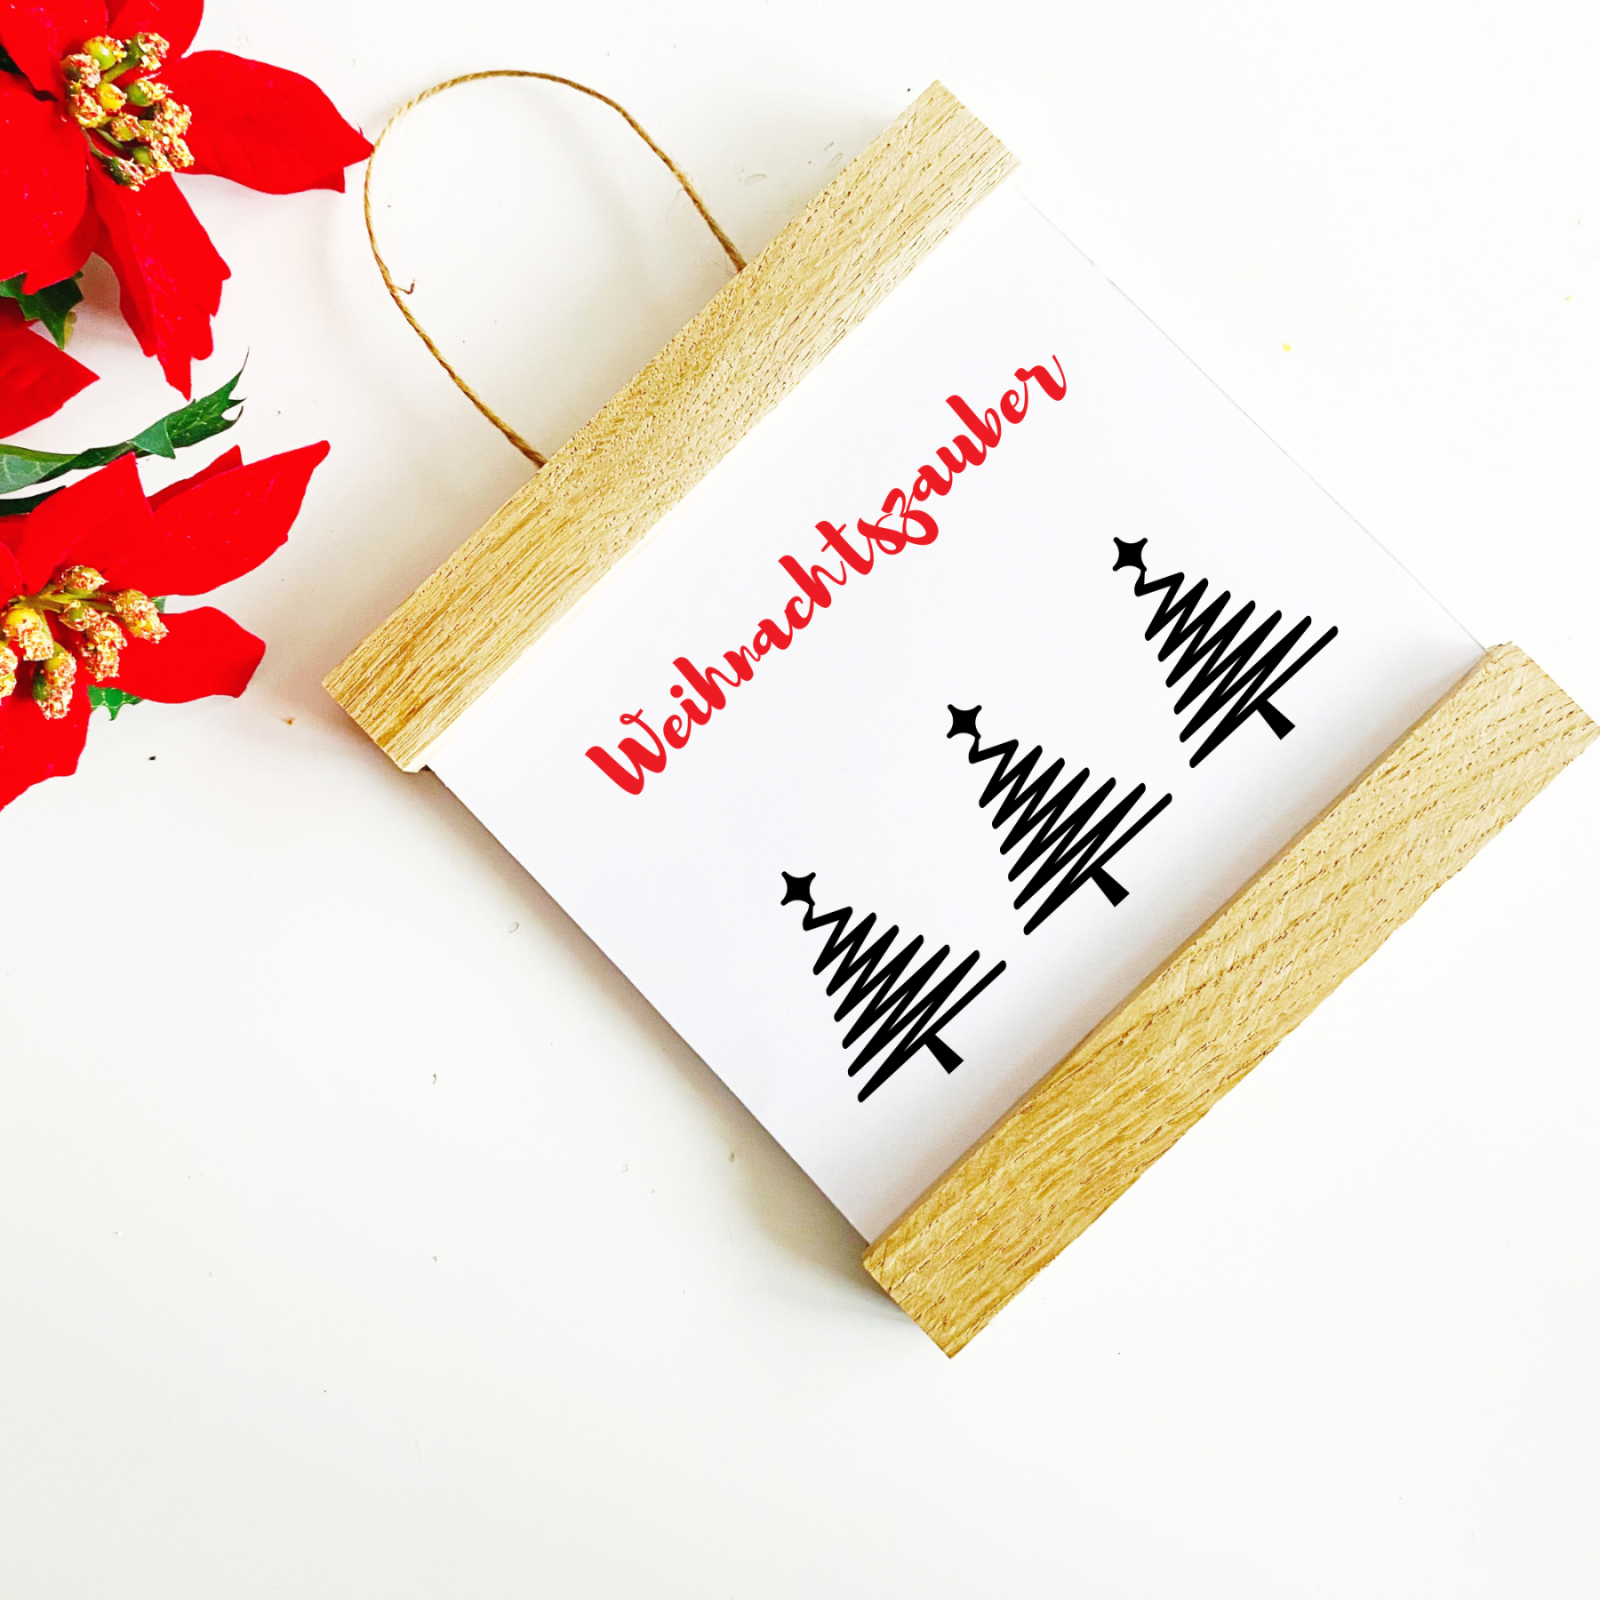 Holzschild Türschild Weihnachten - Geschenkidee für Freunde Familie und Kollegen mehrere Motive 6